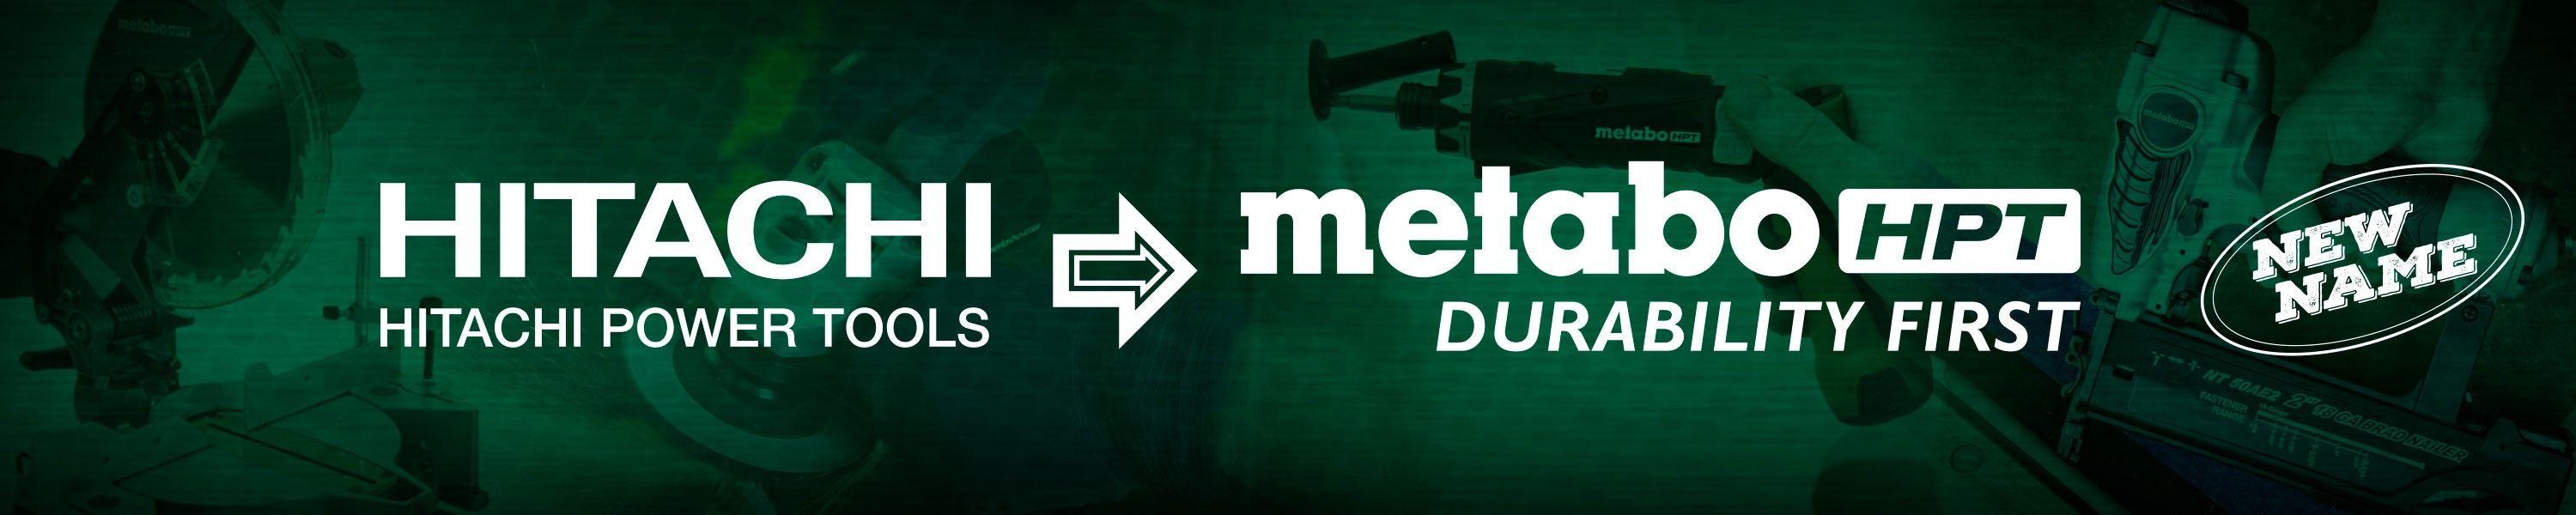 Metabo Logo - Metabo HPT